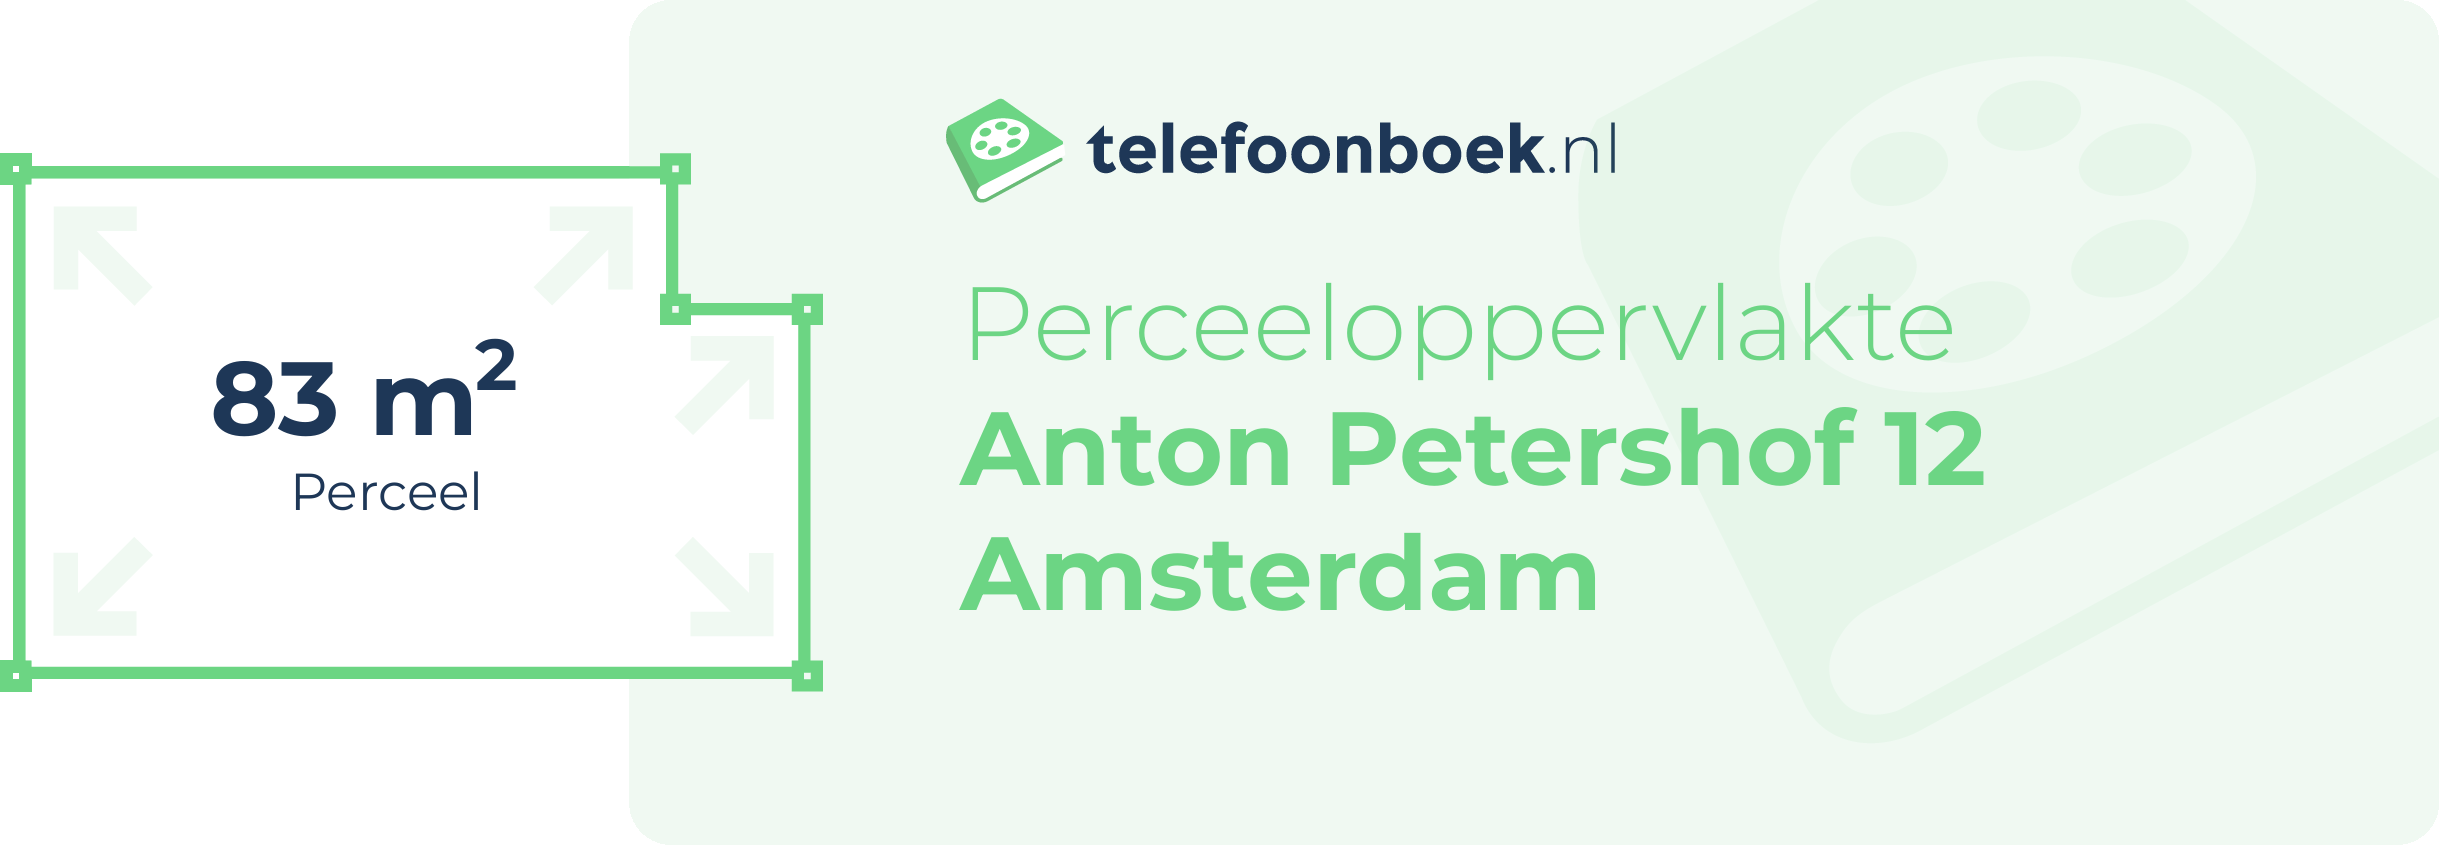 Perceeloppervlakte Anton Petershof 12 Amsterdam